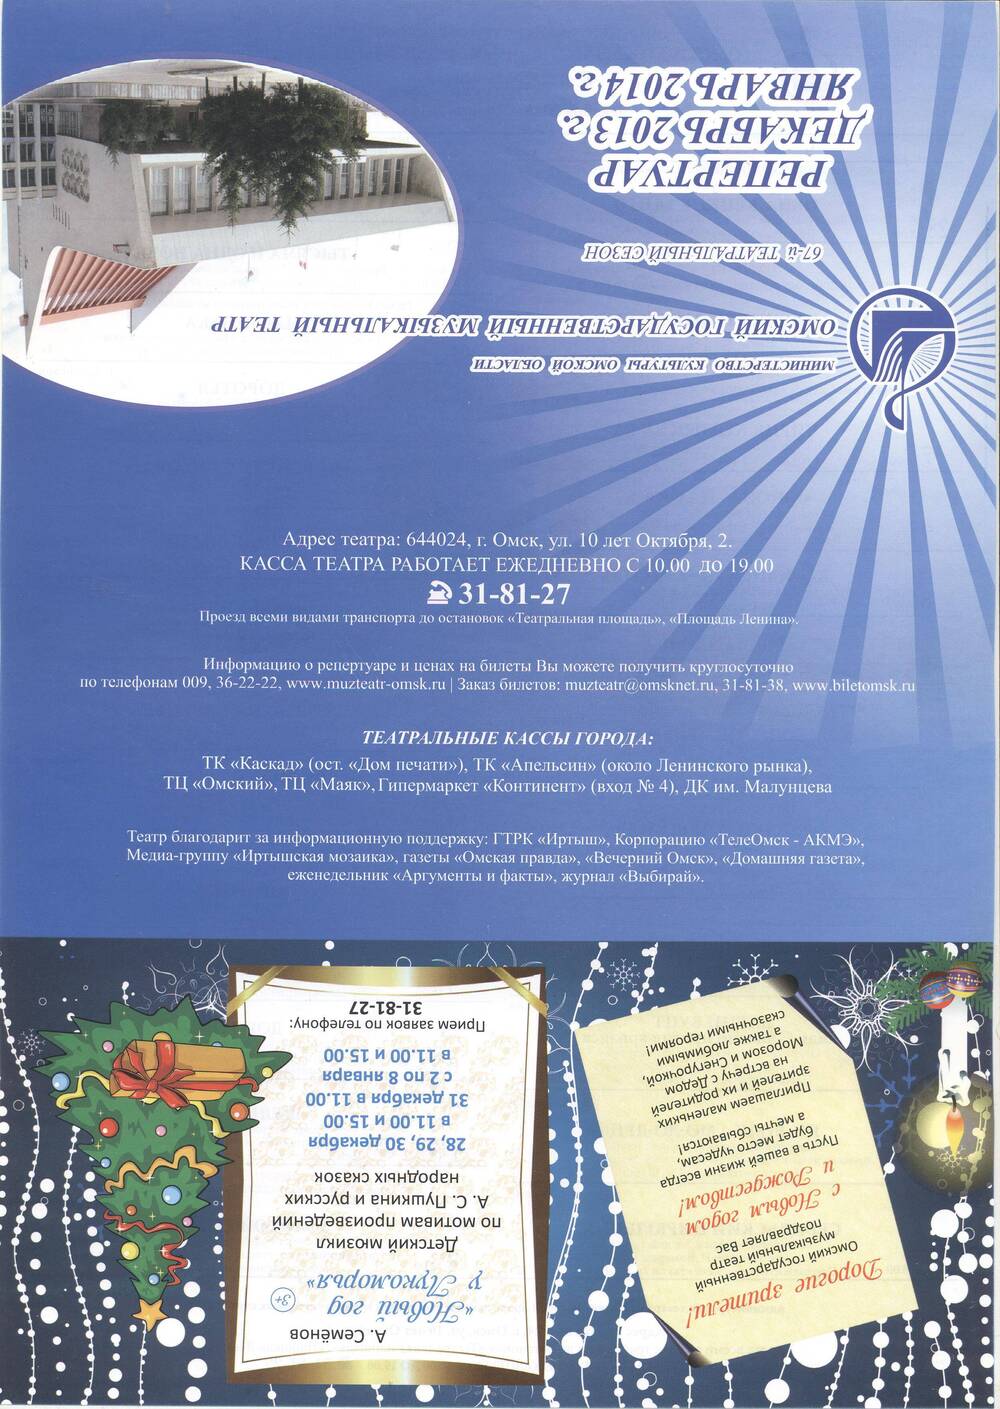 Репертуарный лист на декабрь 2013 г.– январь 2014 г. Омский музыкальный театр.